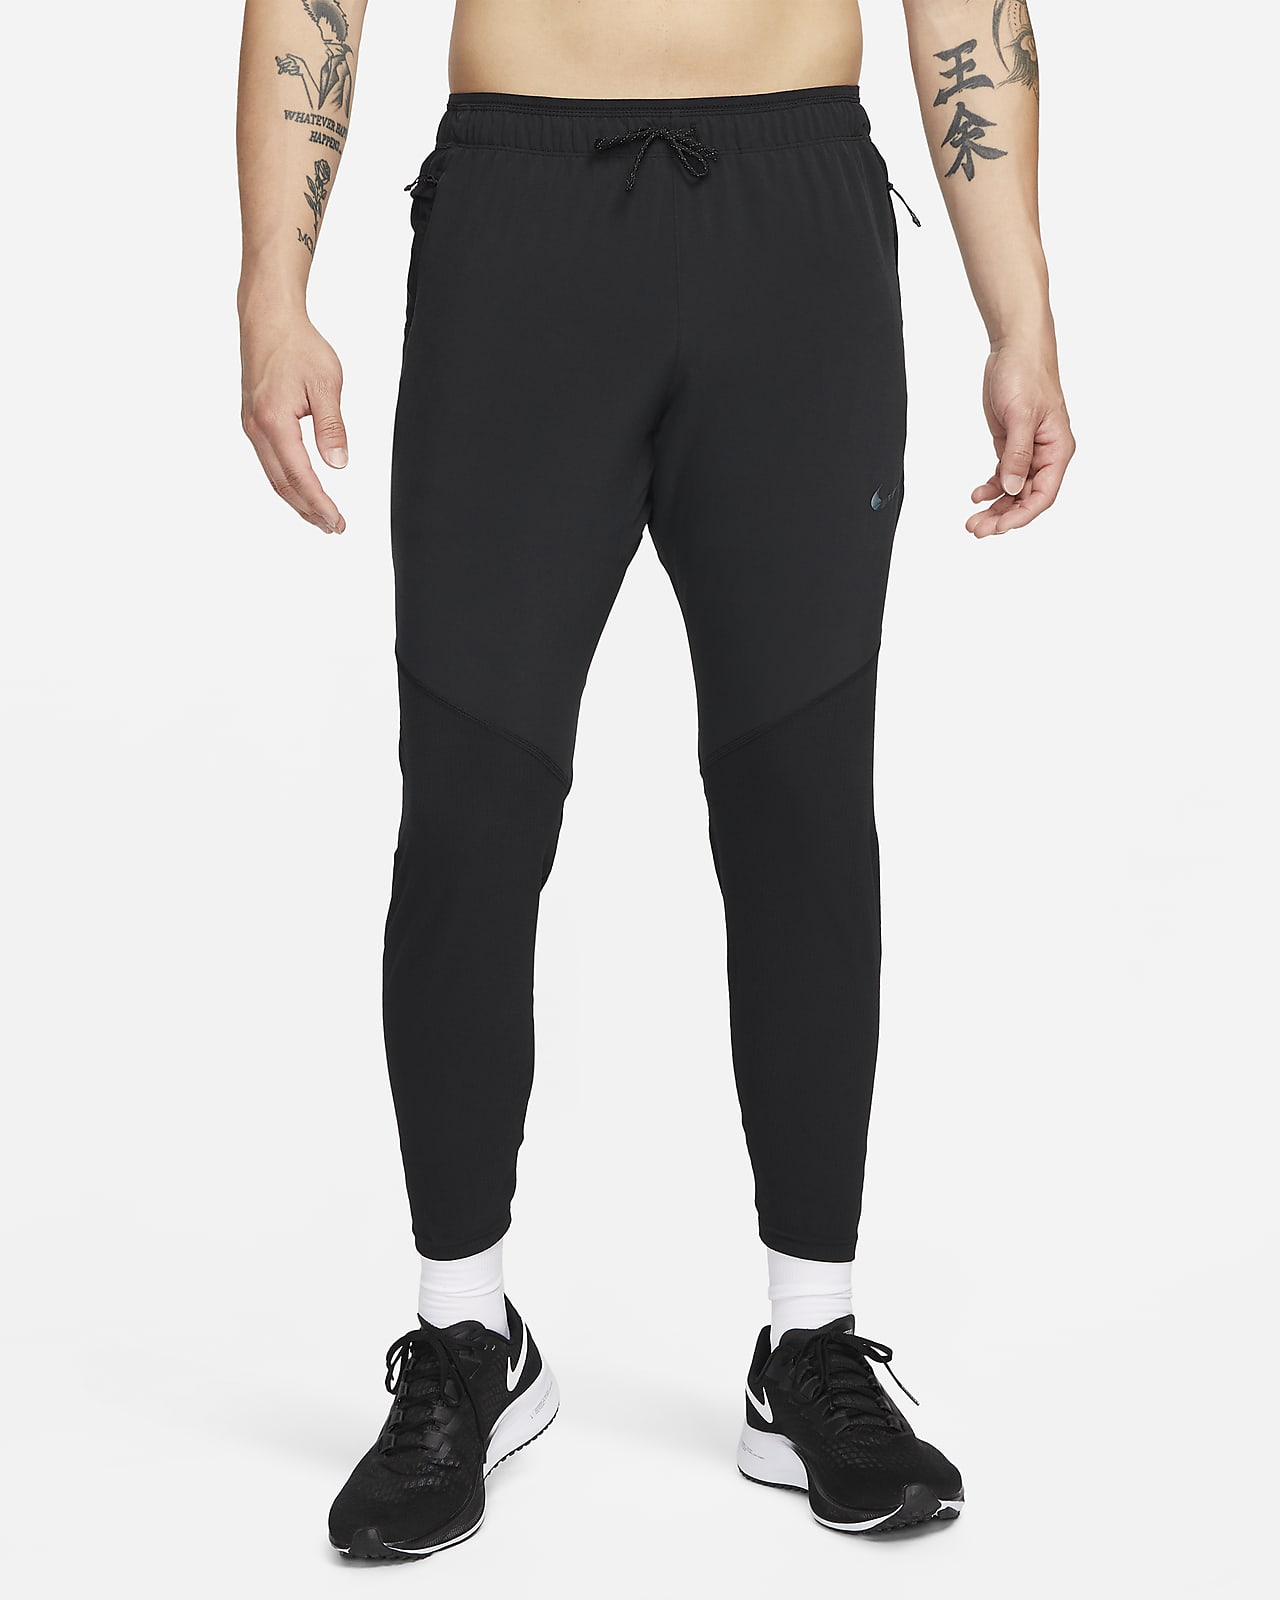 Mens Nike Sportswear Tech Fleece Joggers Pants Trousers Marina Blue Size  Small | eBay